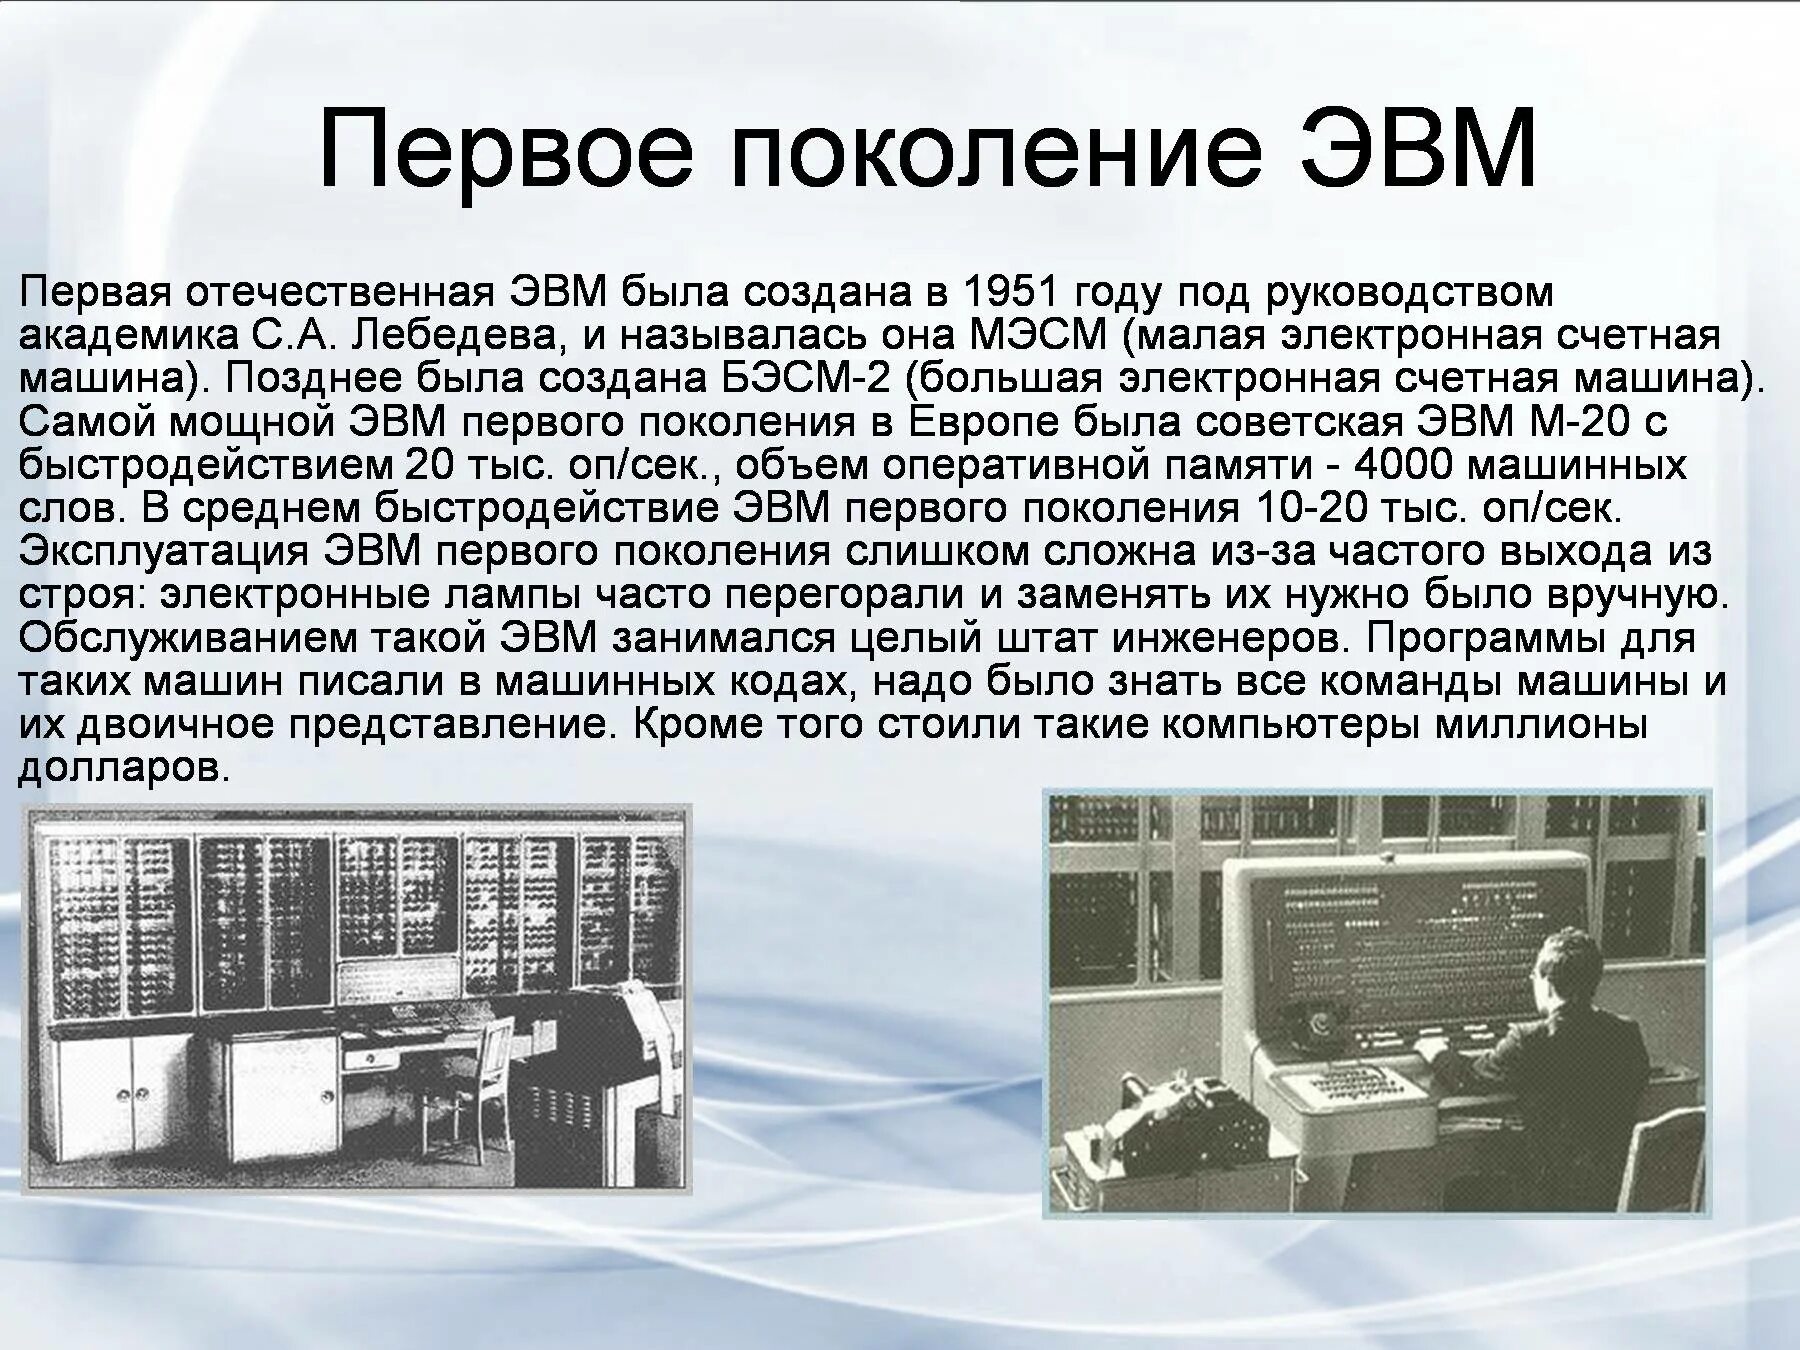 Кто создал электроника. История развития вычислительной техники 3 поколения ЭВМ. ЭВМ первого поколения: «БЭСМ-2». Первое поколение ЭВМ. Изображение ЭВМ 1 поколения.